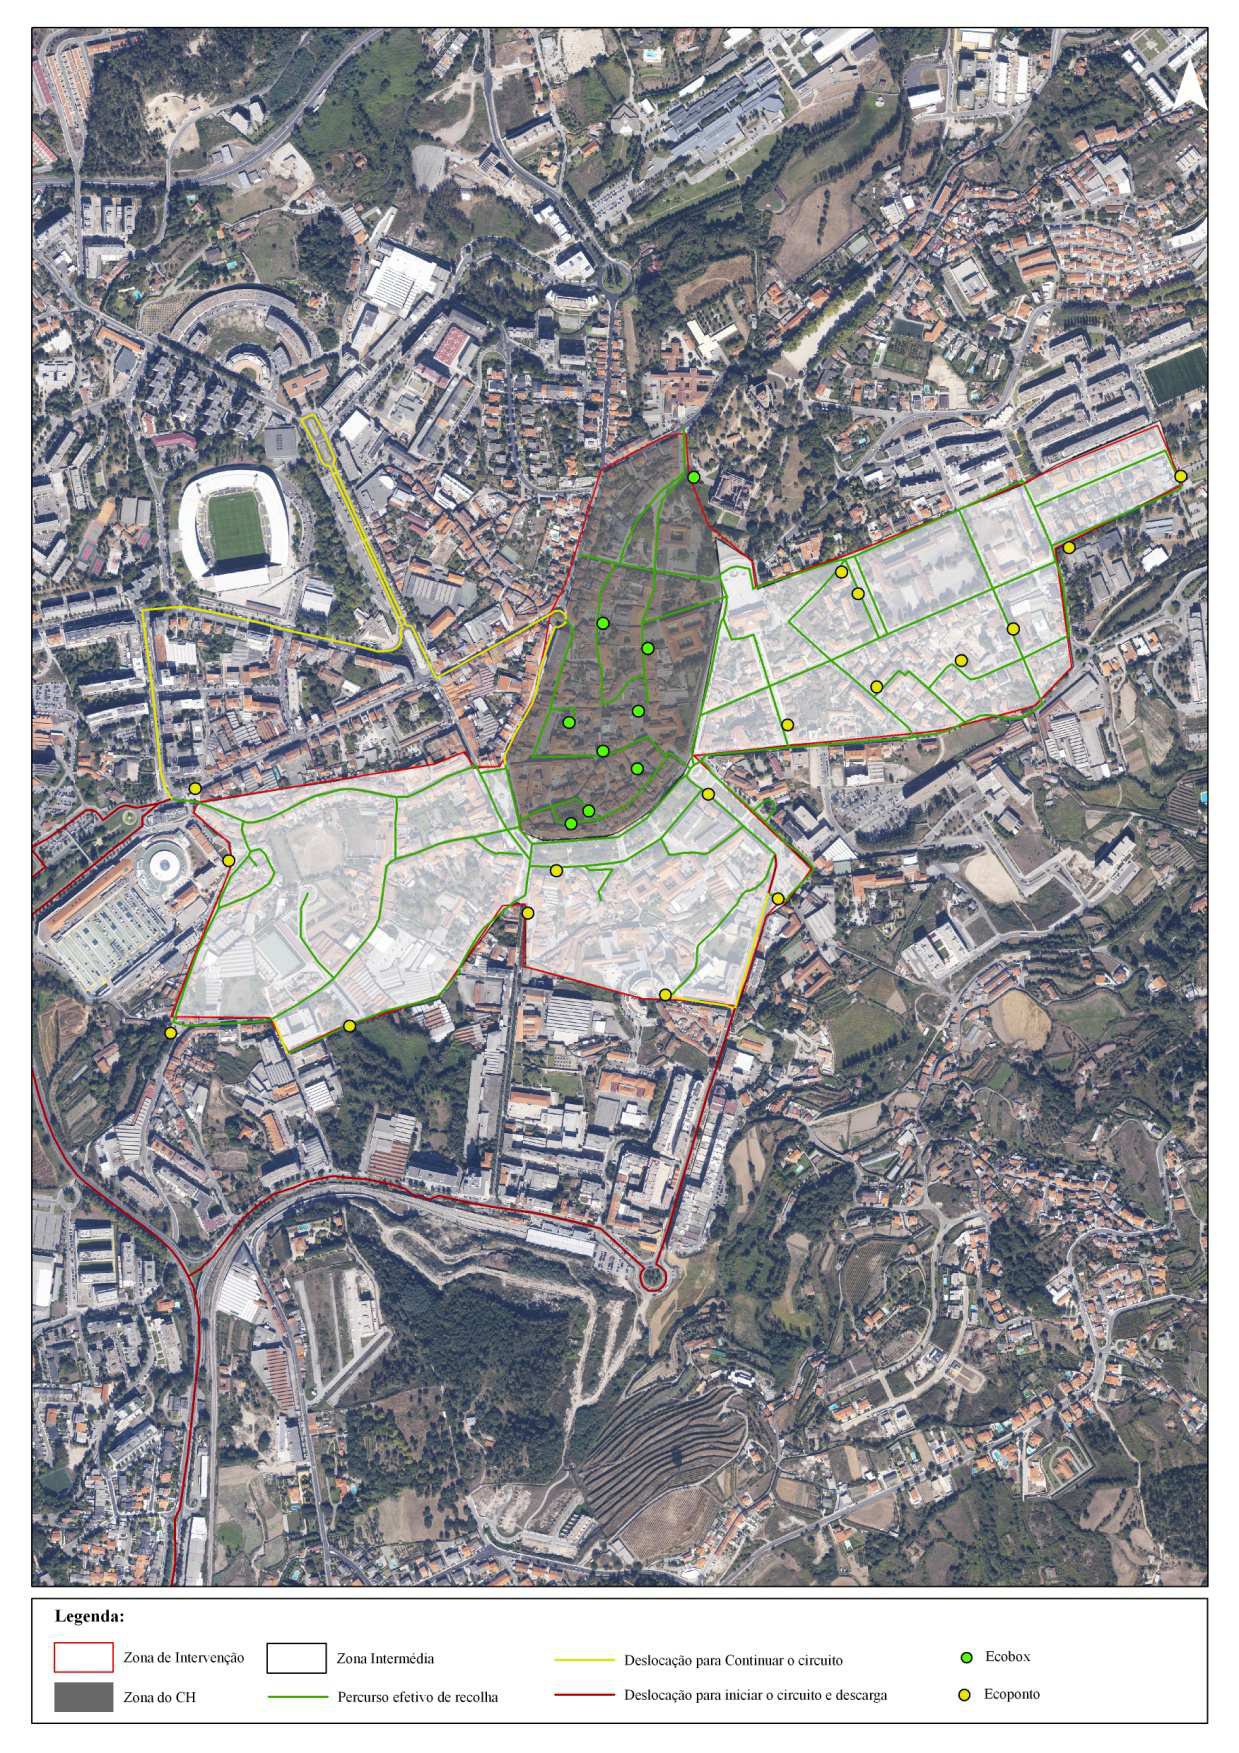 Relativamente ao universo dos resíduos recolhidos no concelho de Guimarães em 2012 num total de 61 269 ton, correspondem à ZI 1 993 ton, representando 3% dos resíduos recolhidos em relação ao